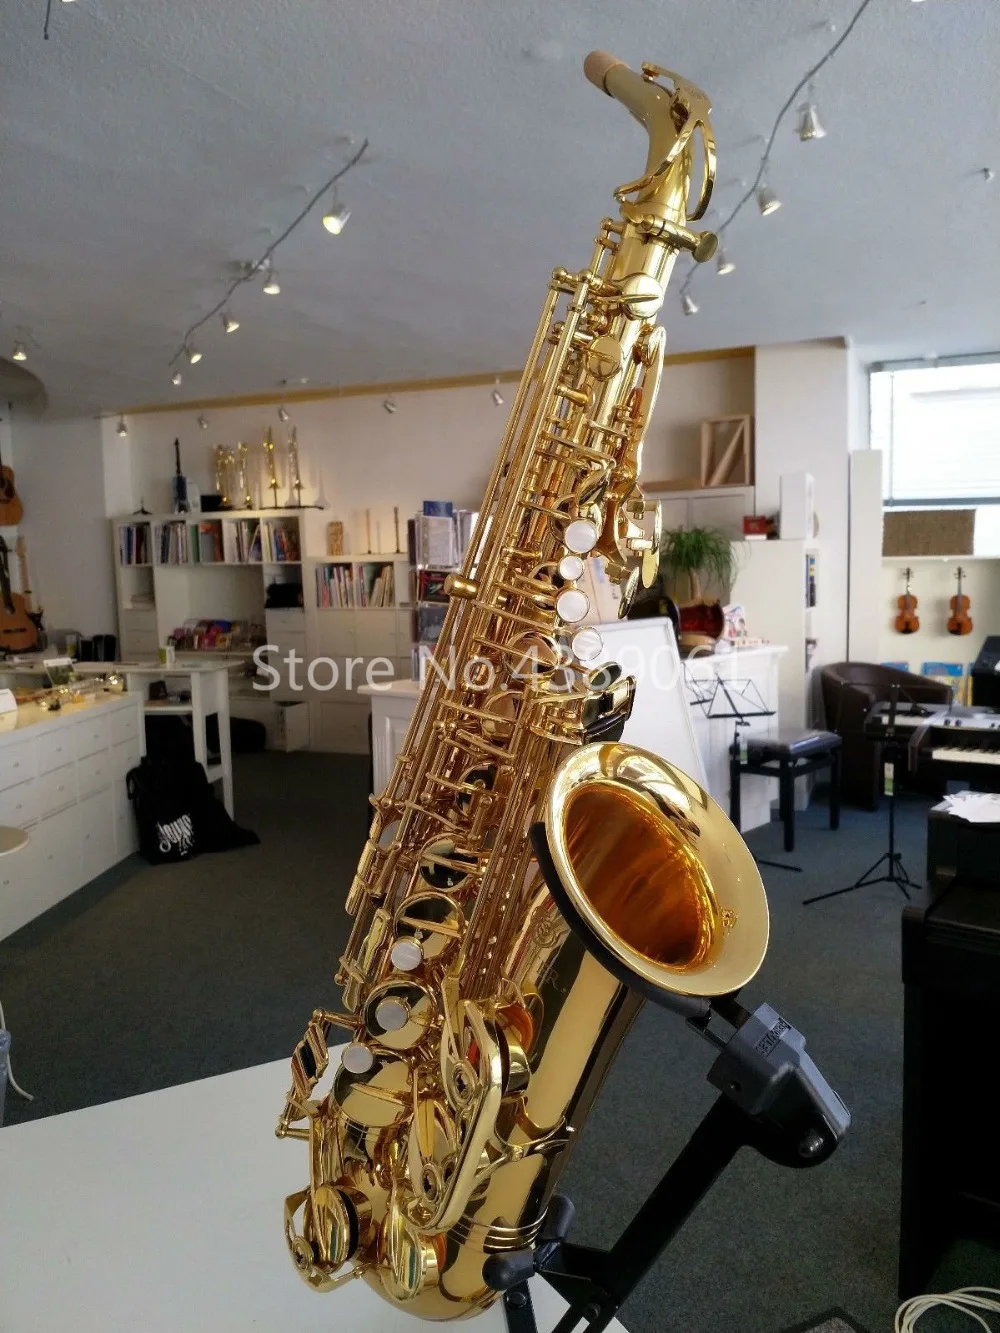 Jupiter JAS-767-II Eb альт саксофон высокого качества латунный золотой лак профессиональные электронные плоские Музыкальные инструменты саксофон